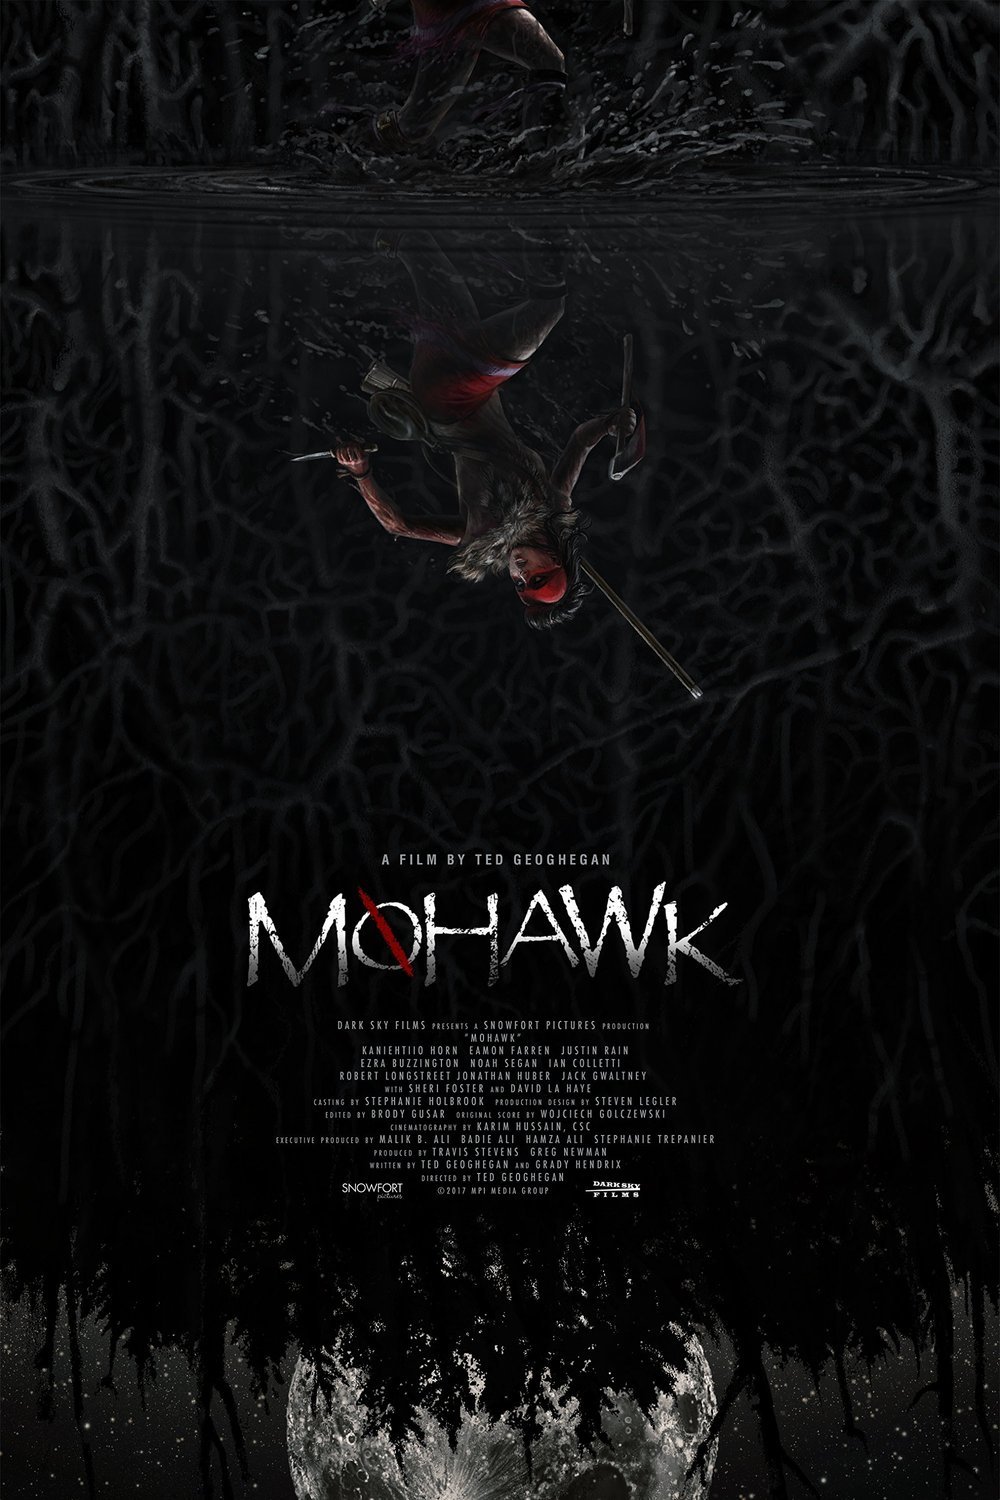 L'affiche du film Mohawk